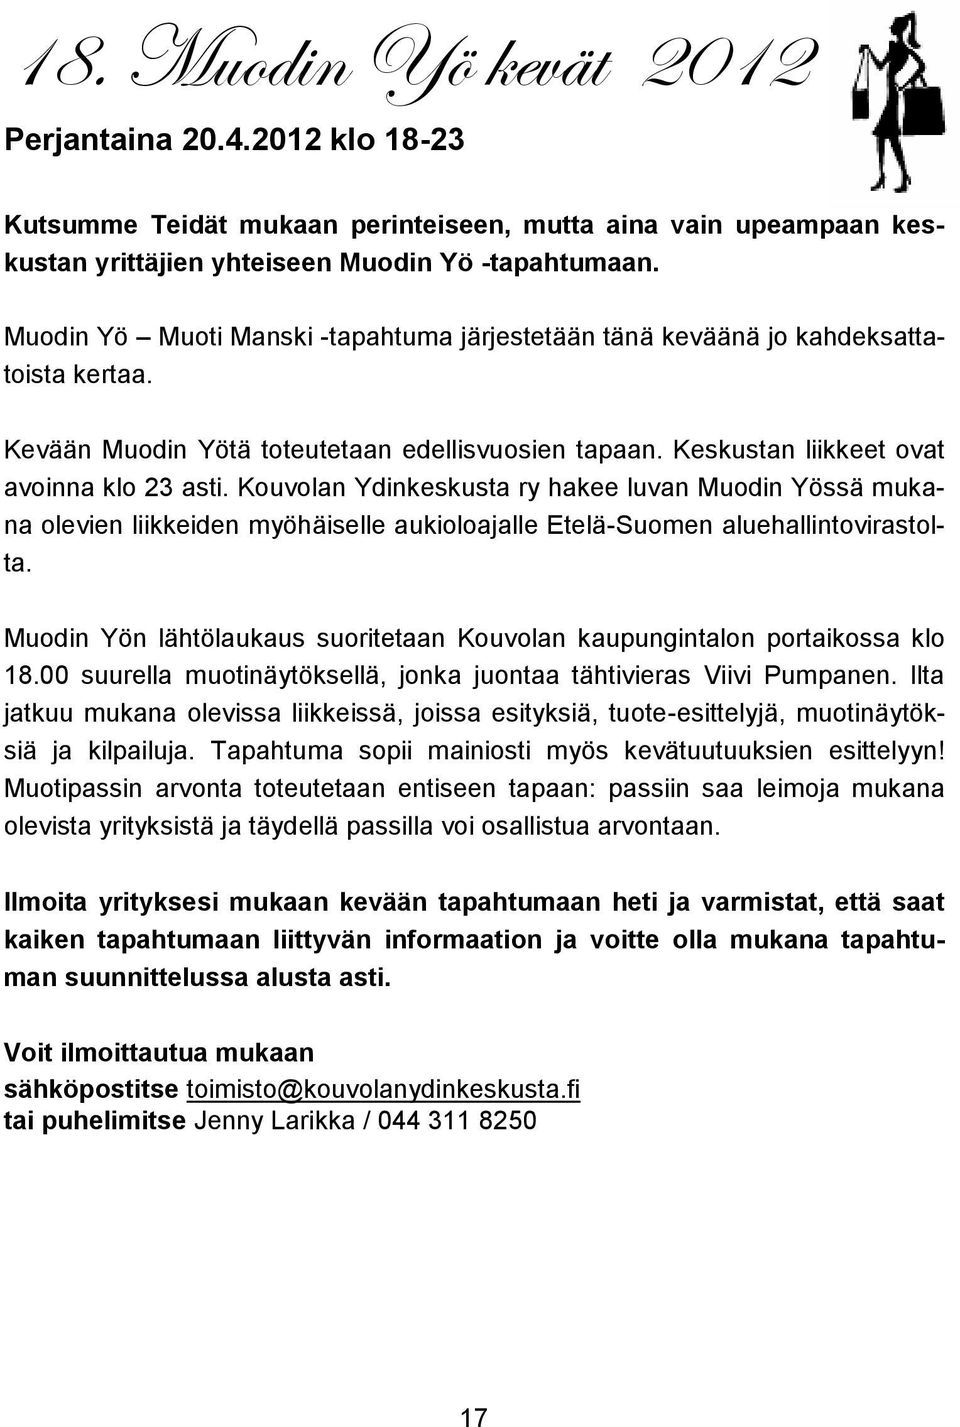 Kouvolan Ydinkeskusta ry hakee luvan Muodin Yössä mukana olevien liikkeiden myöhäiselle aukioloajalle Etelä-Suomen aluehallintovirastolta.